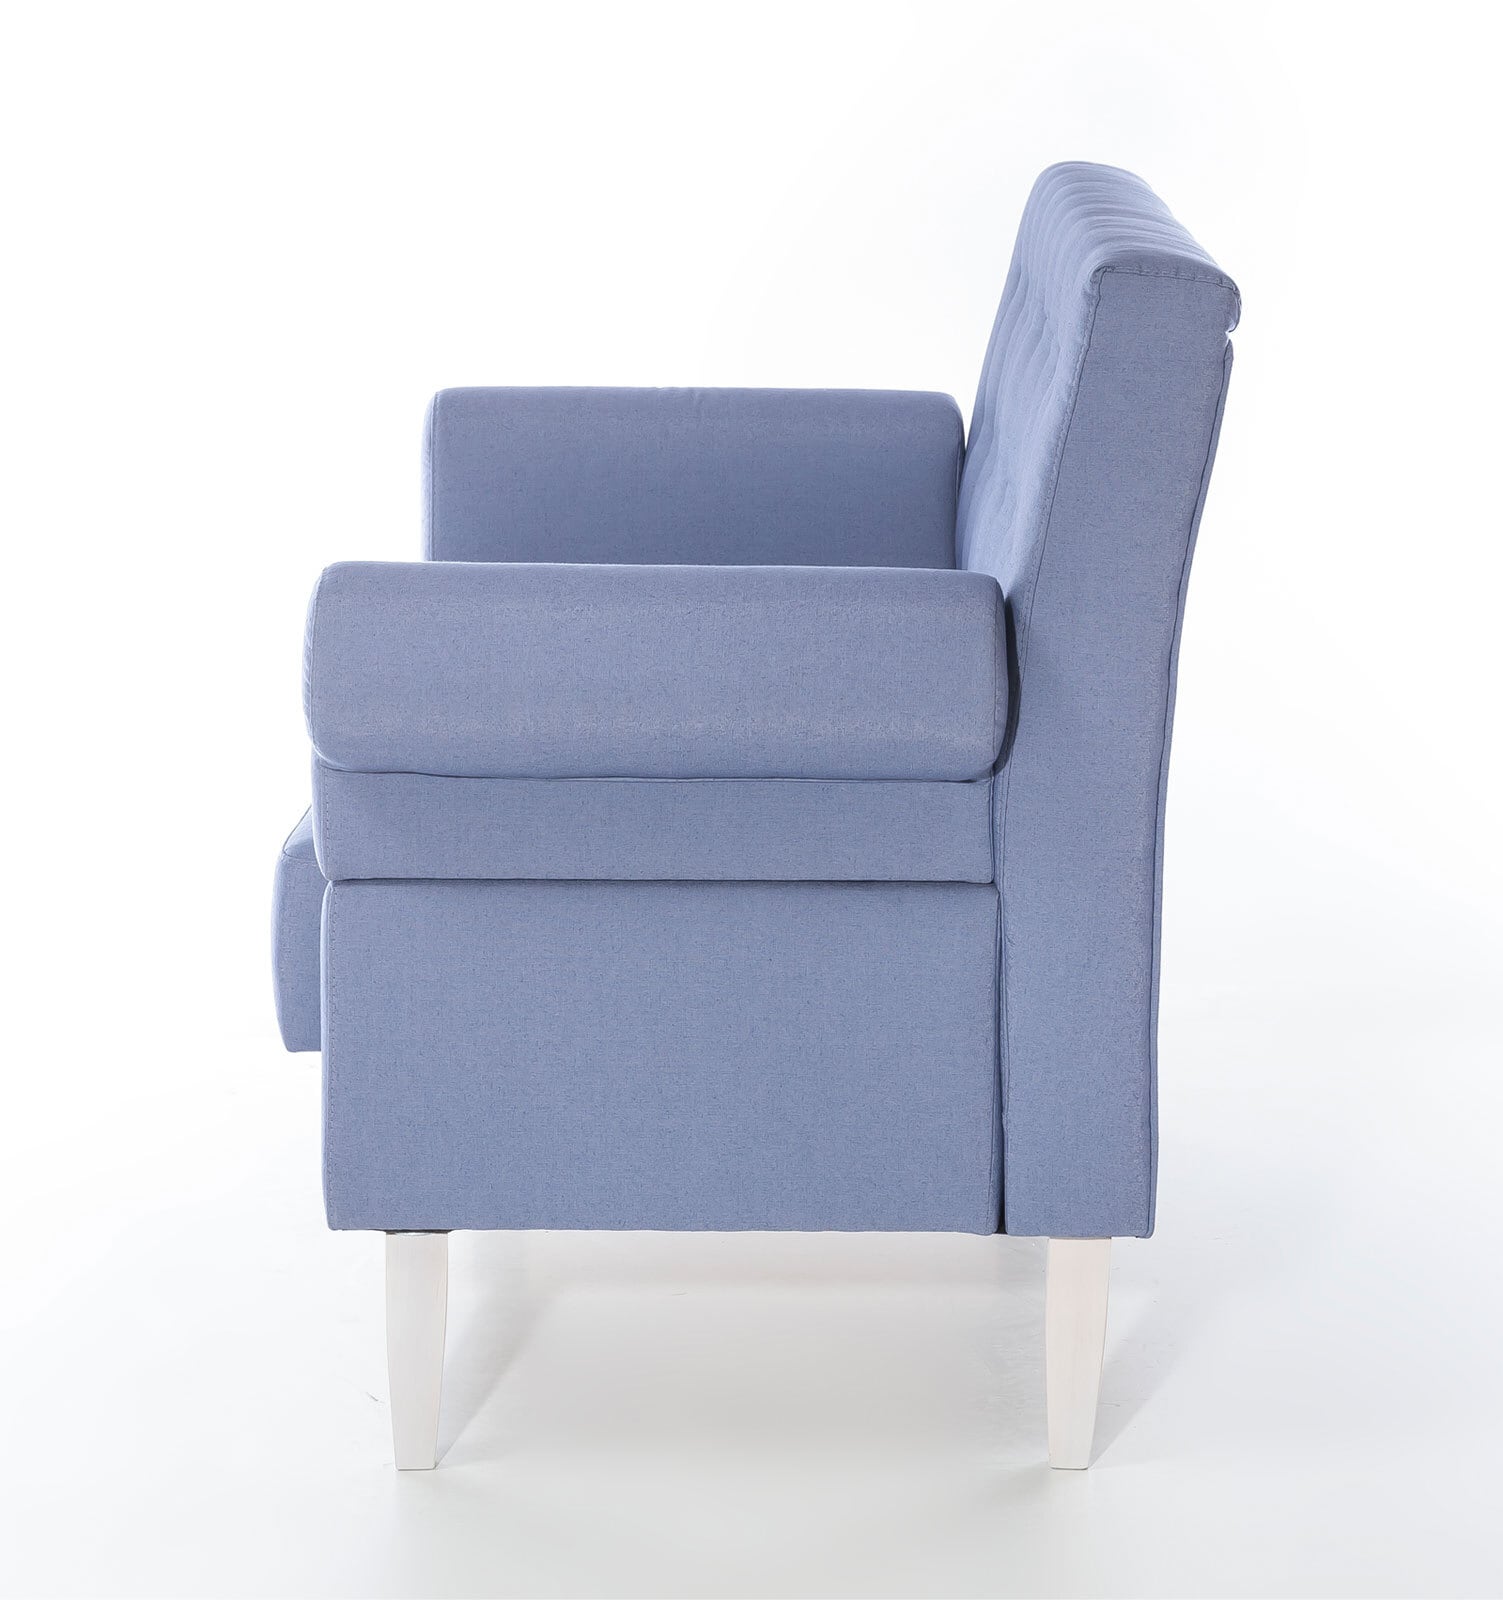 Sofa SAN BIAGIO 2-Sitzer blau/ weiß